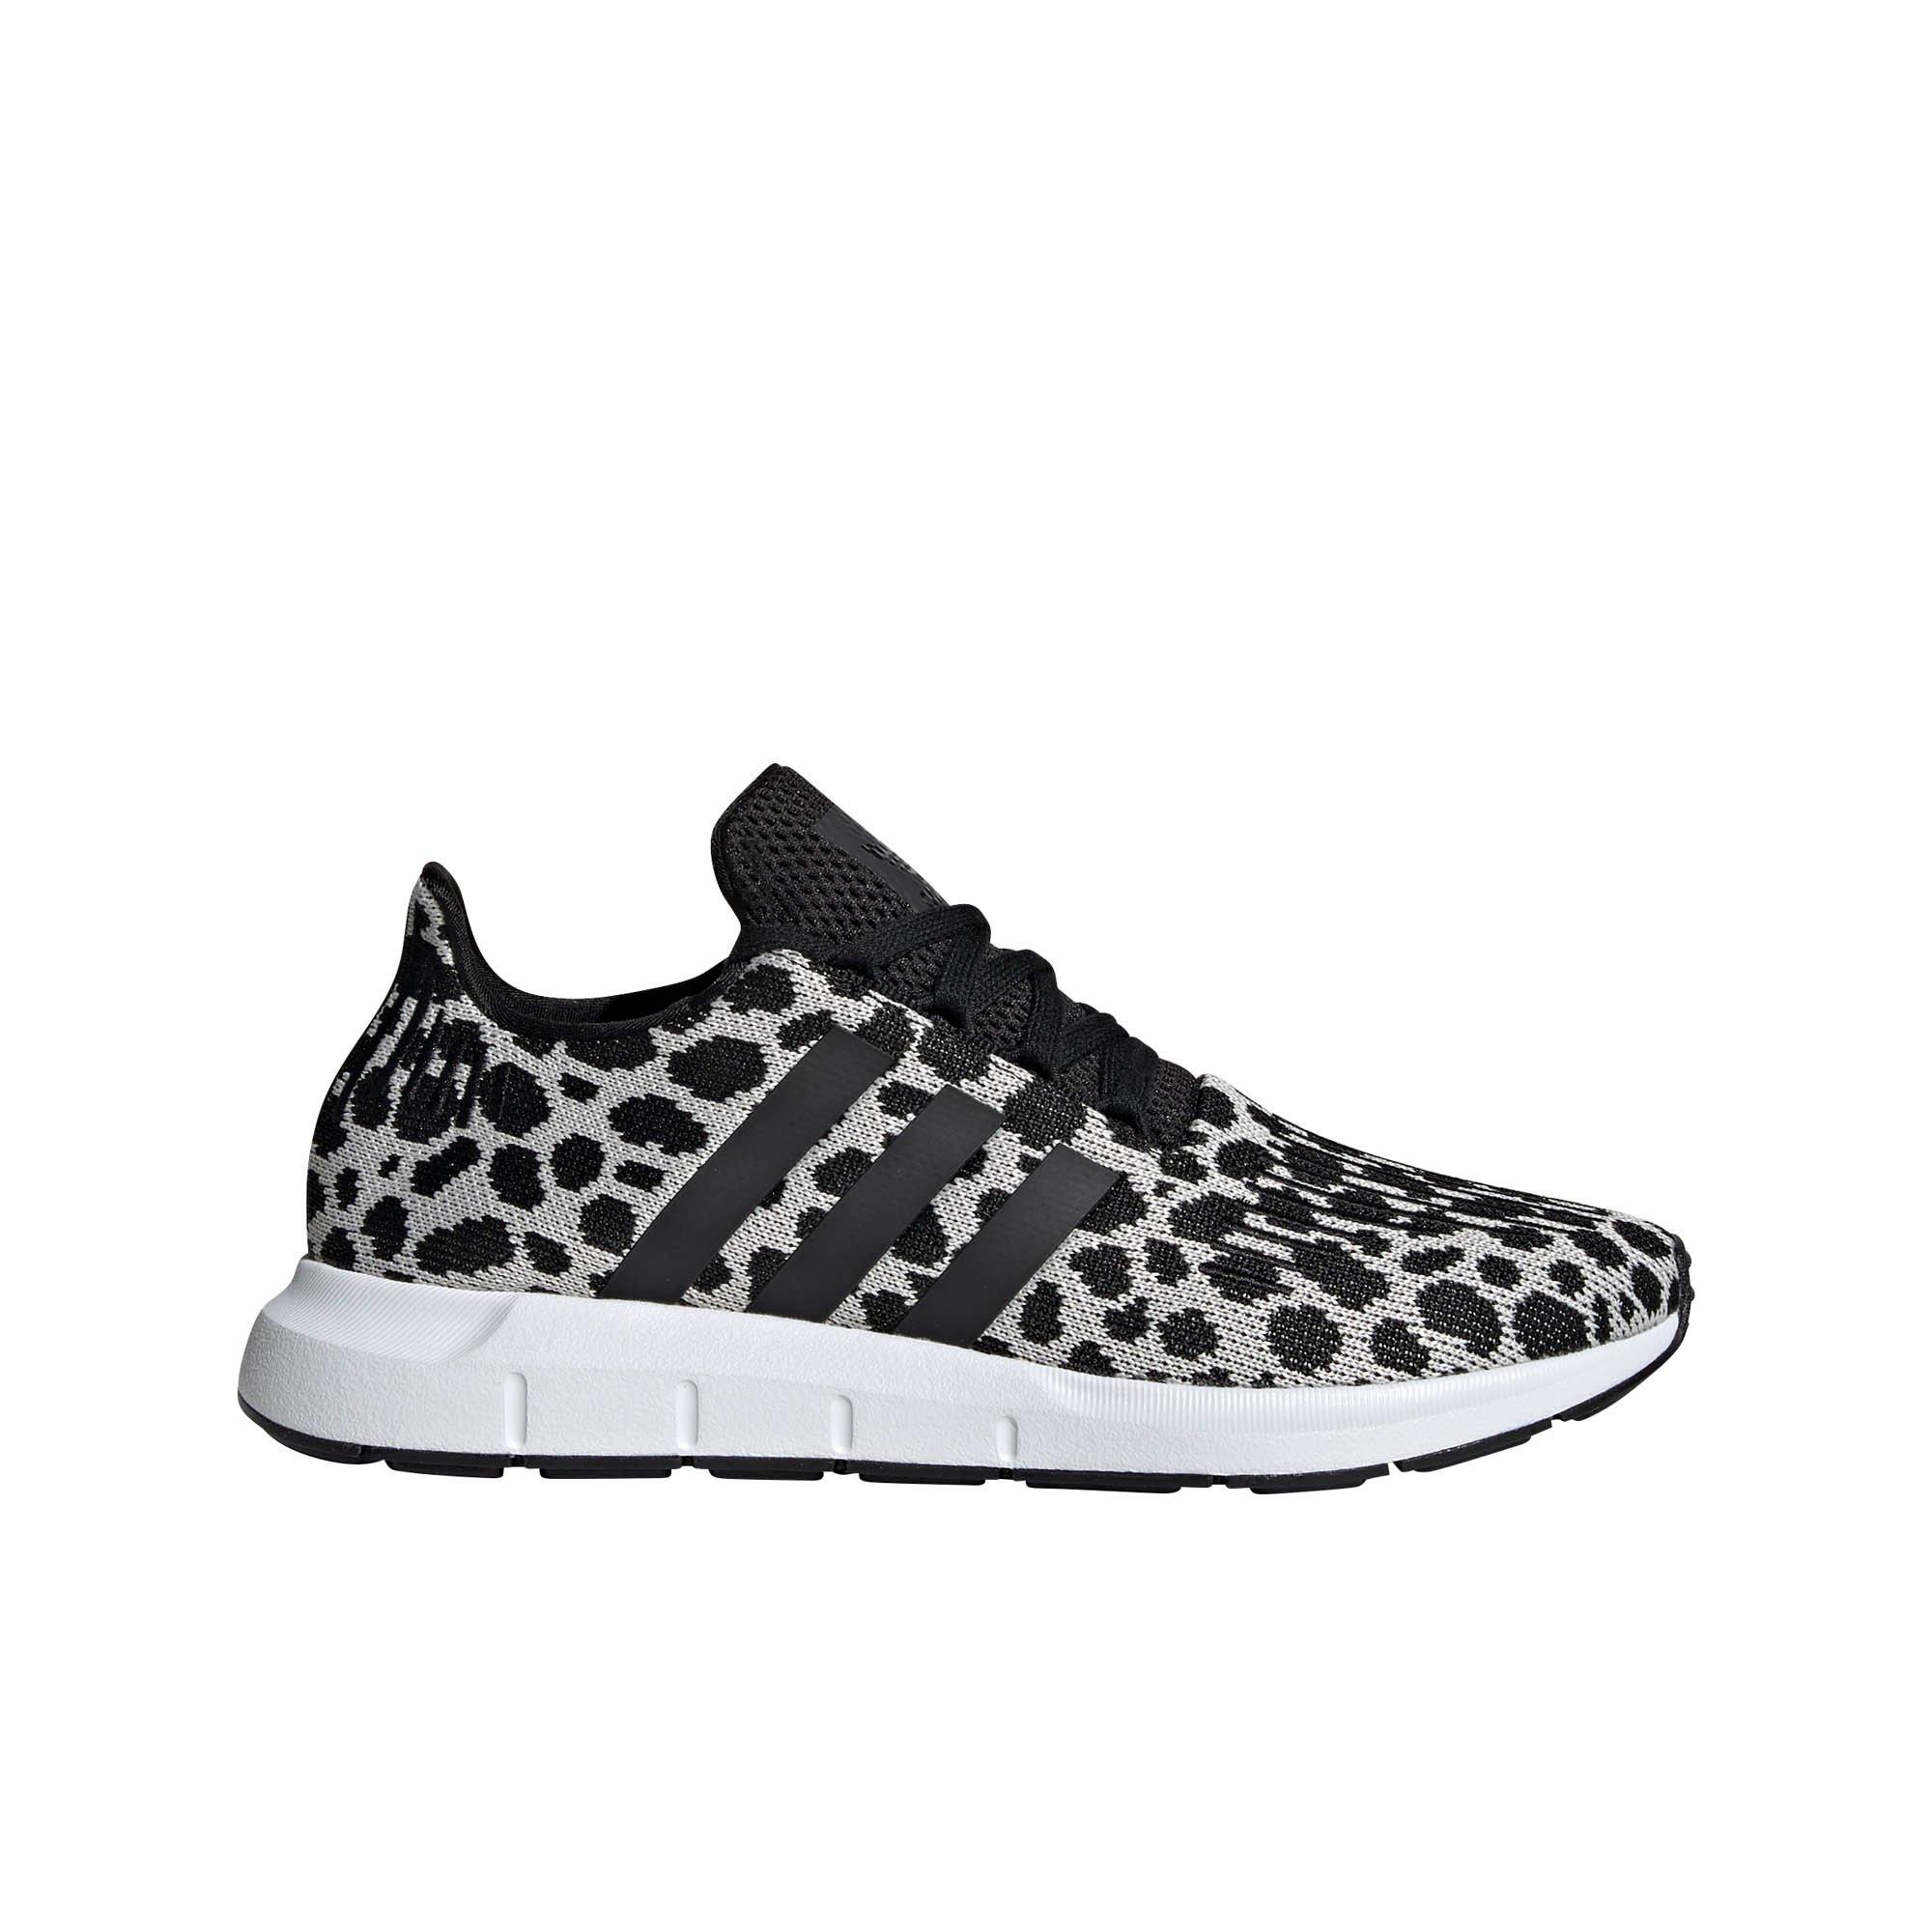 adidas swift run cheetah print shoes